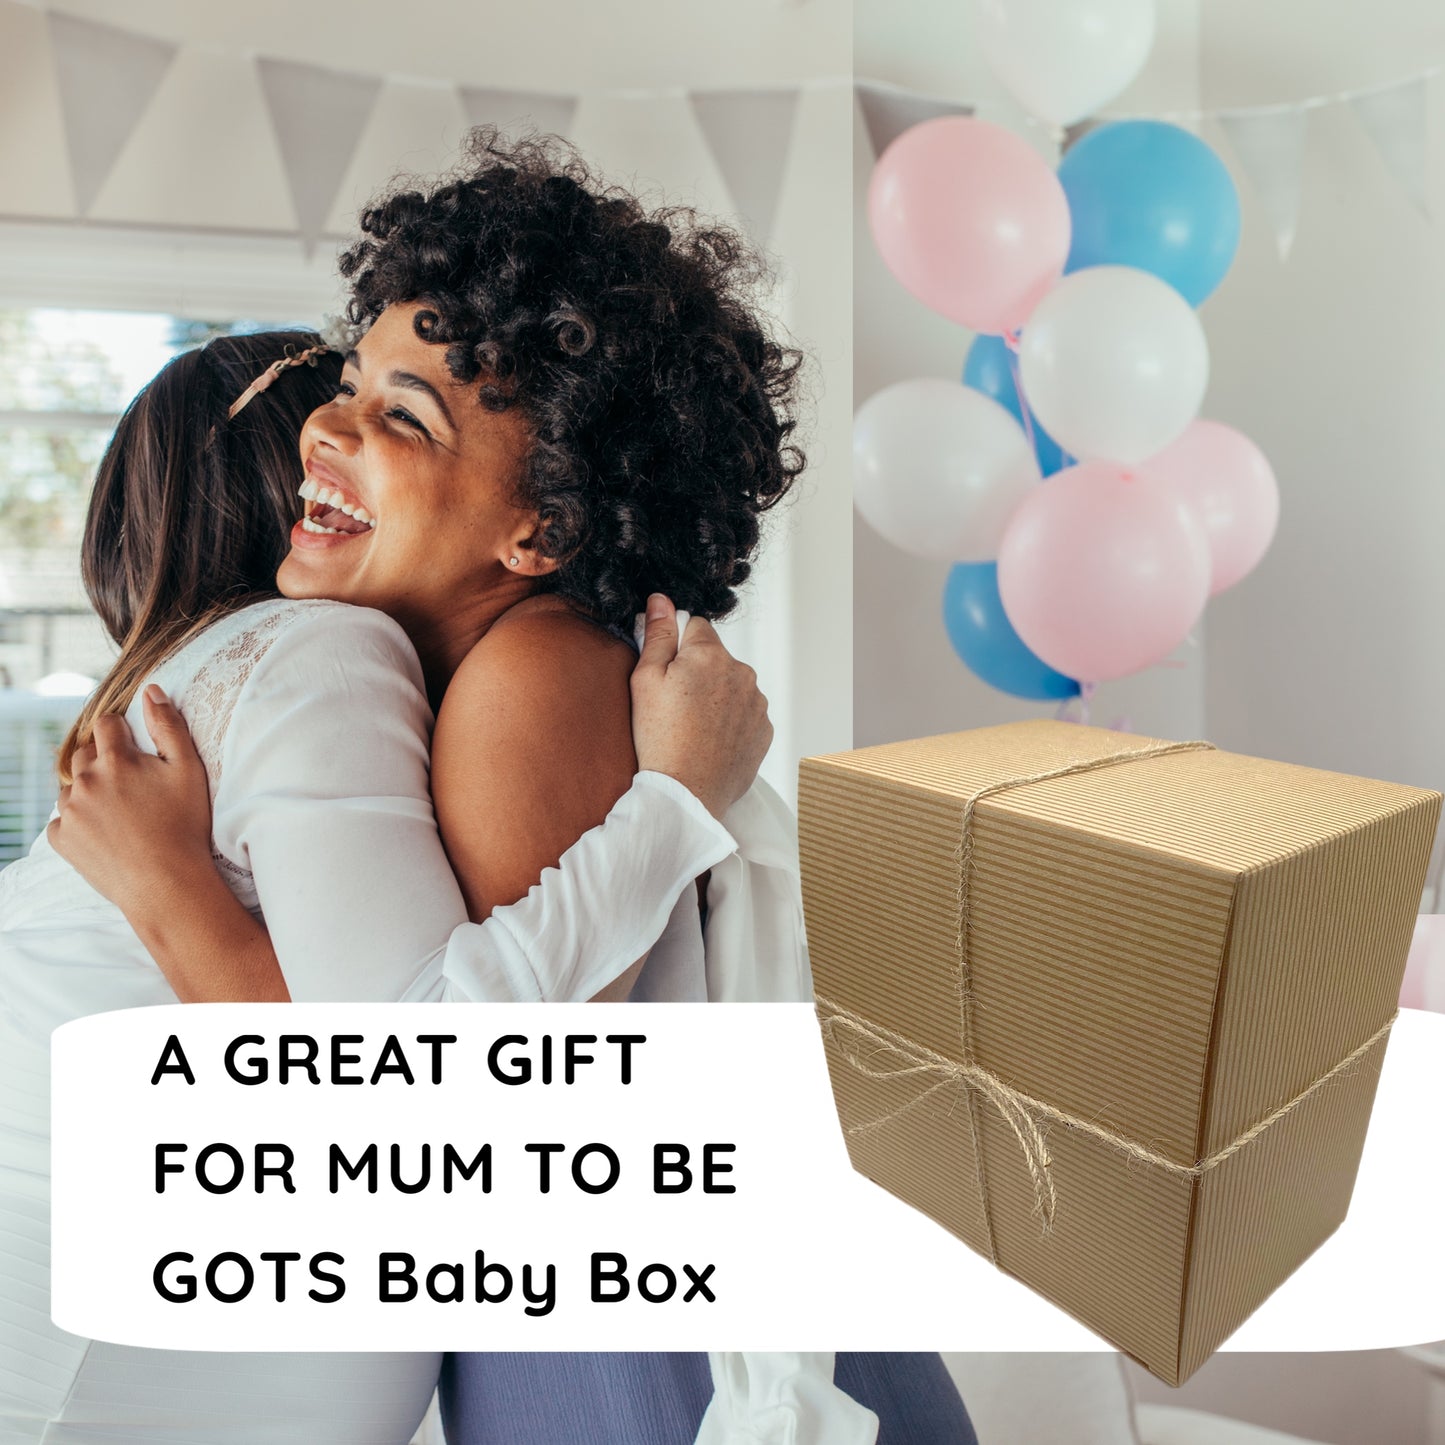 GOTS baby & mum gift box - white